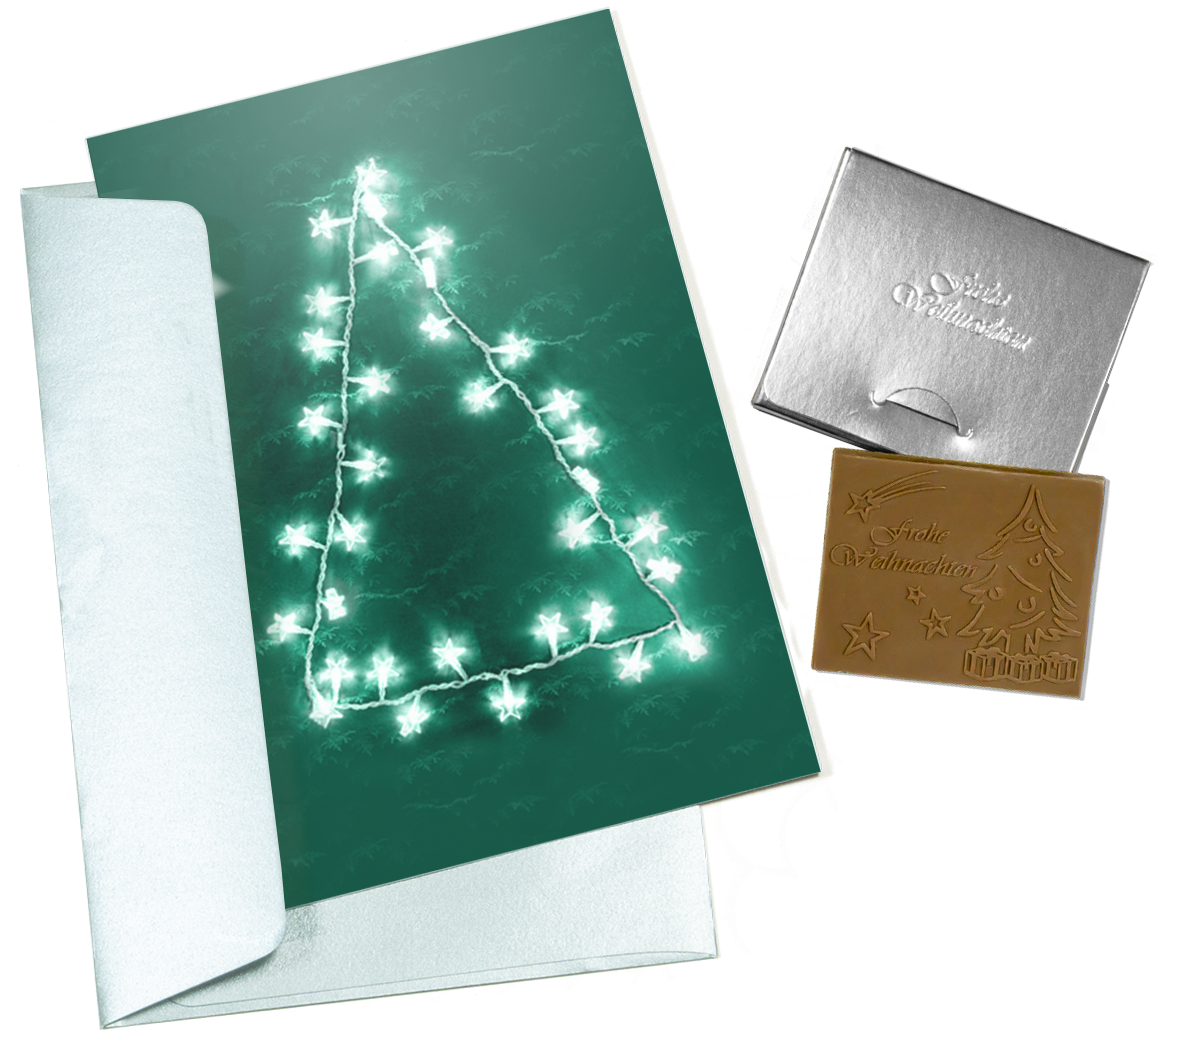 Biglietti di Natale con cioccolato goffrato in scatola dorata, set da 5, design biglietto: cielo blu scuro con albero di Natale, cioccolato goffrato: "Frohe Weihnachten", busta in oro